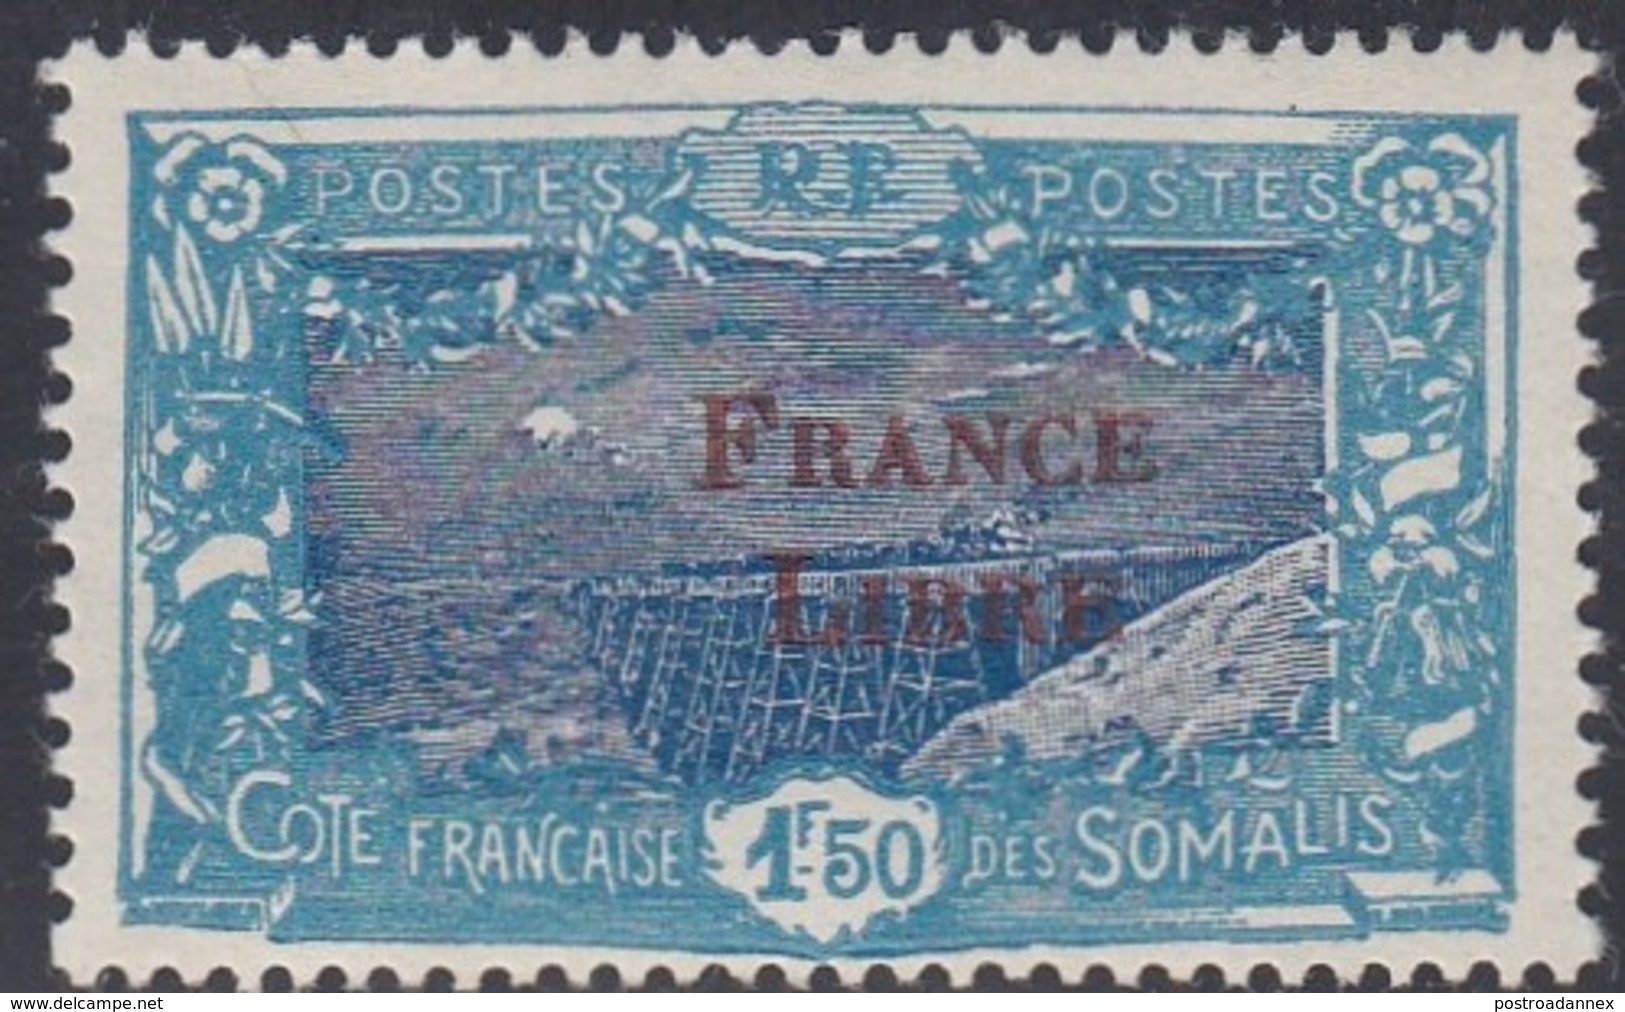 Somali Coast, Scott #192, Mint Never Hinged, Railroad Bridge Overprinted, Issued 1943 - Unused Stamps